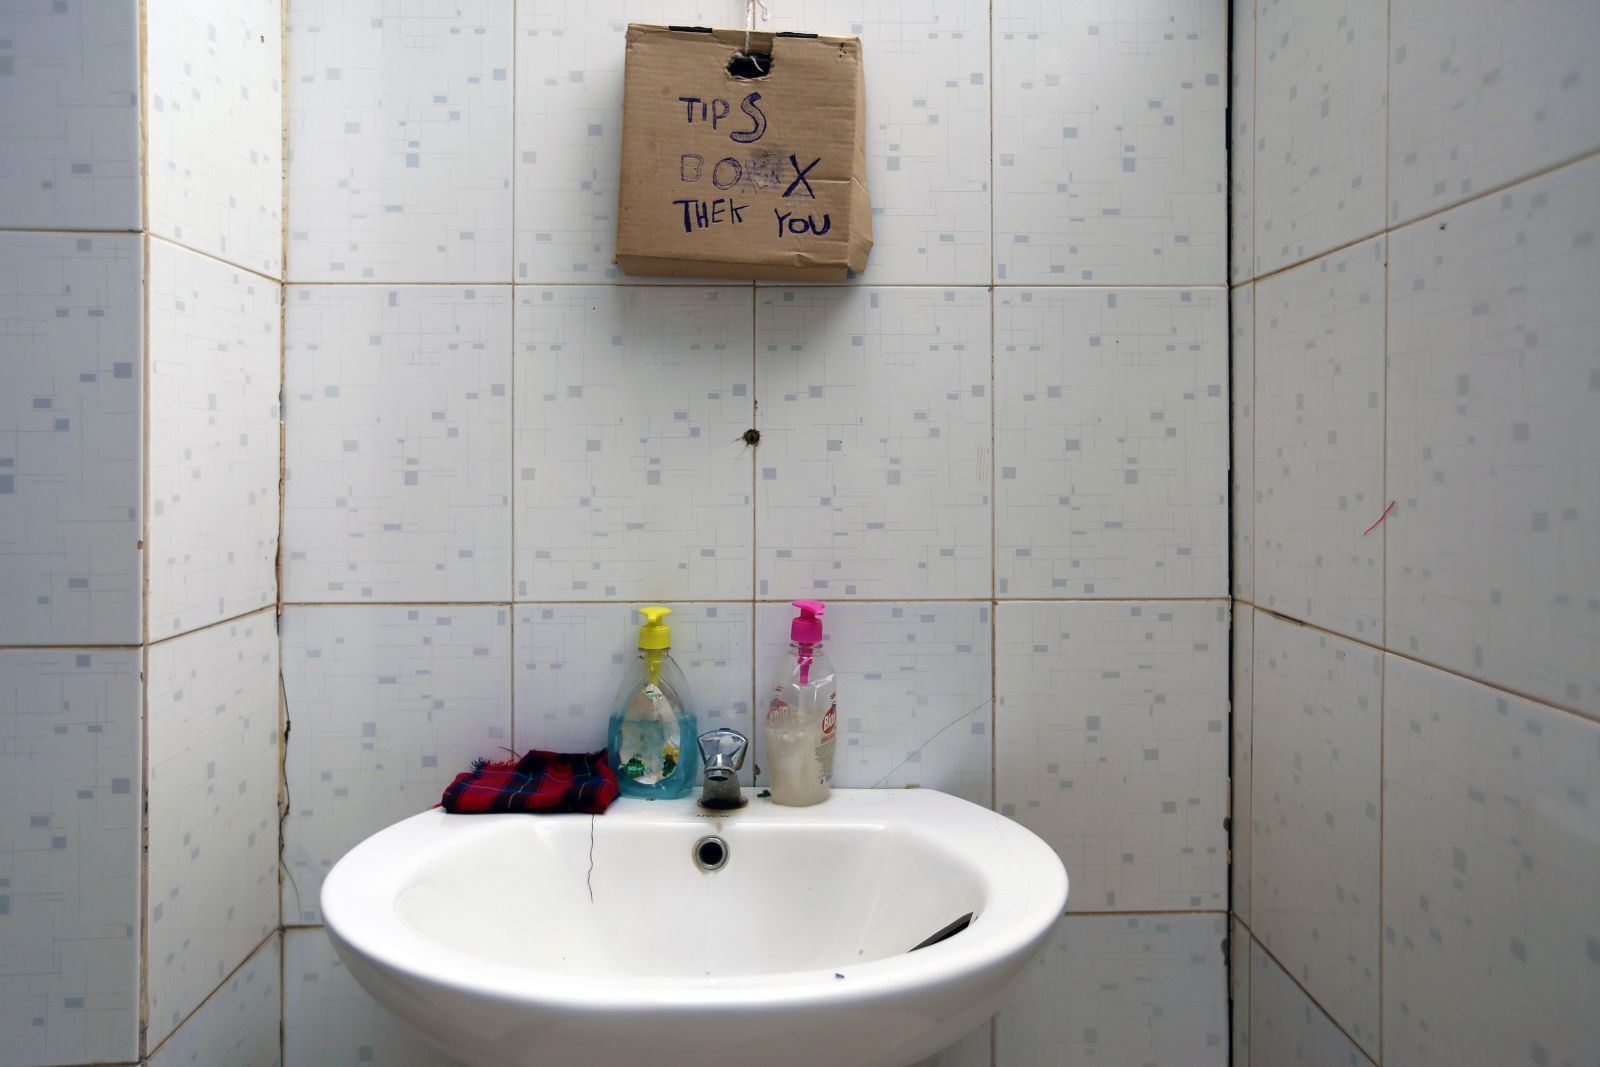 Andere Länder, andere Sitten… Trinkgeldkasse direkt am Waschbecken einer Toilette mitten in der Serengeti. Auch dieses Motiv erzählt eine Geschichte…